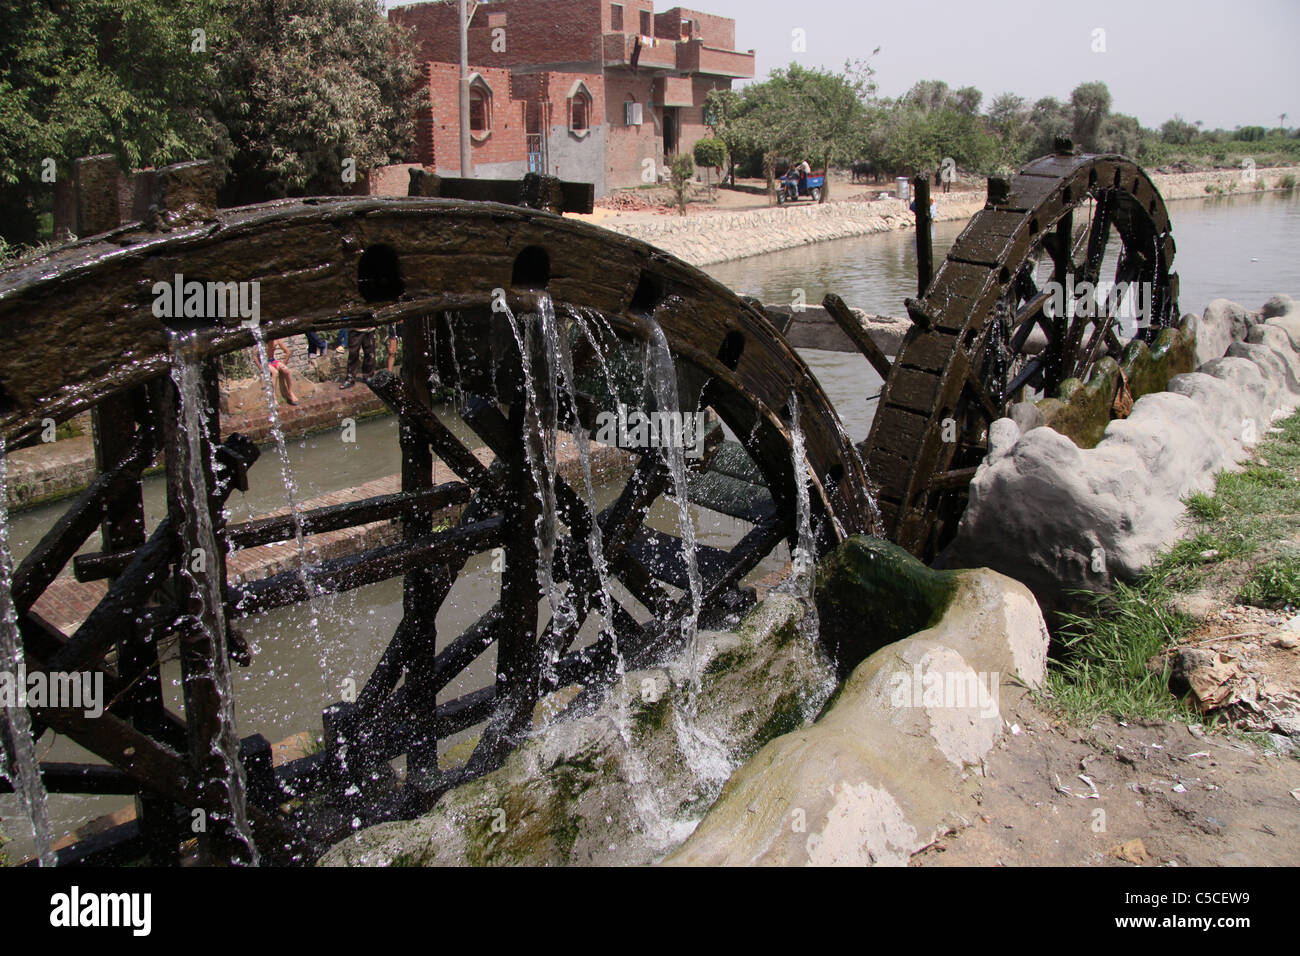 Les roues de l'eau d'irrigation à l'ouest du désert -Égypte Fayoum Banque D'Images